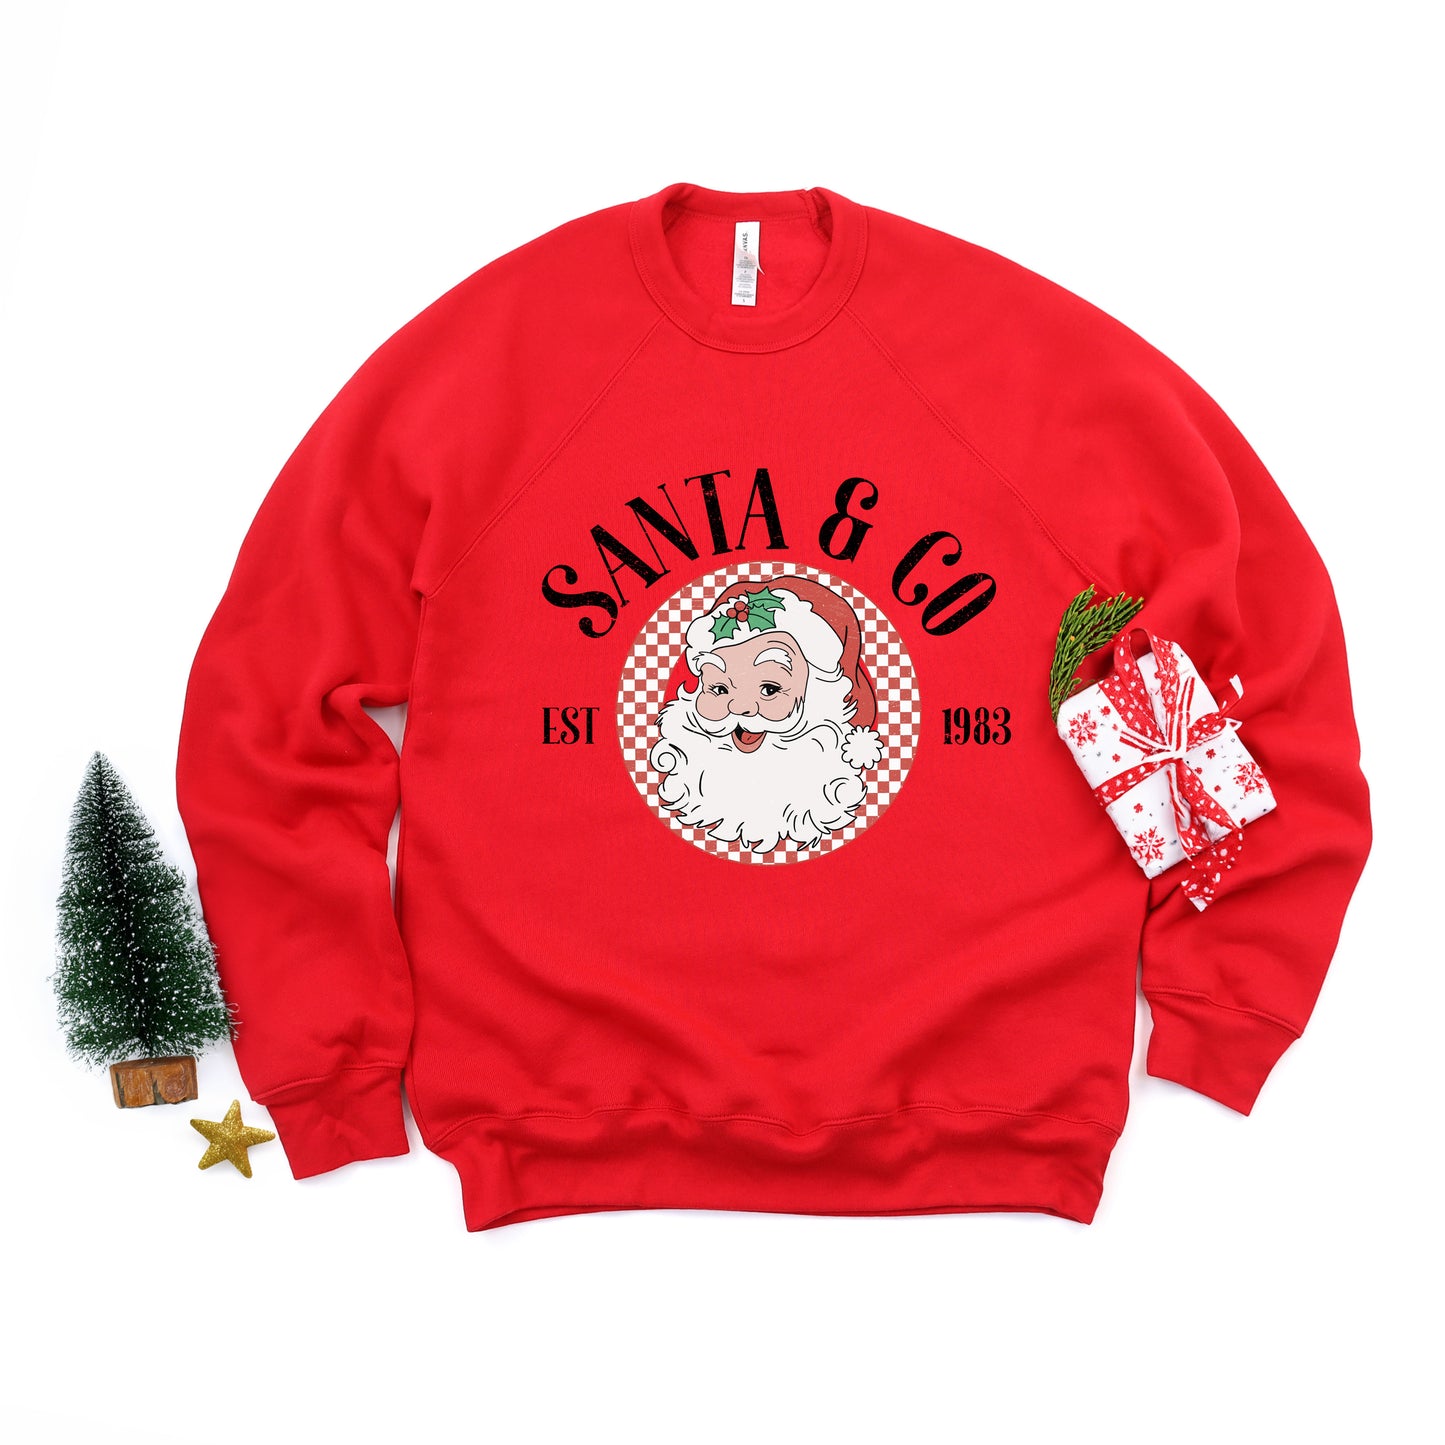 Santa and Co | Bella Canvas Sweatshirt